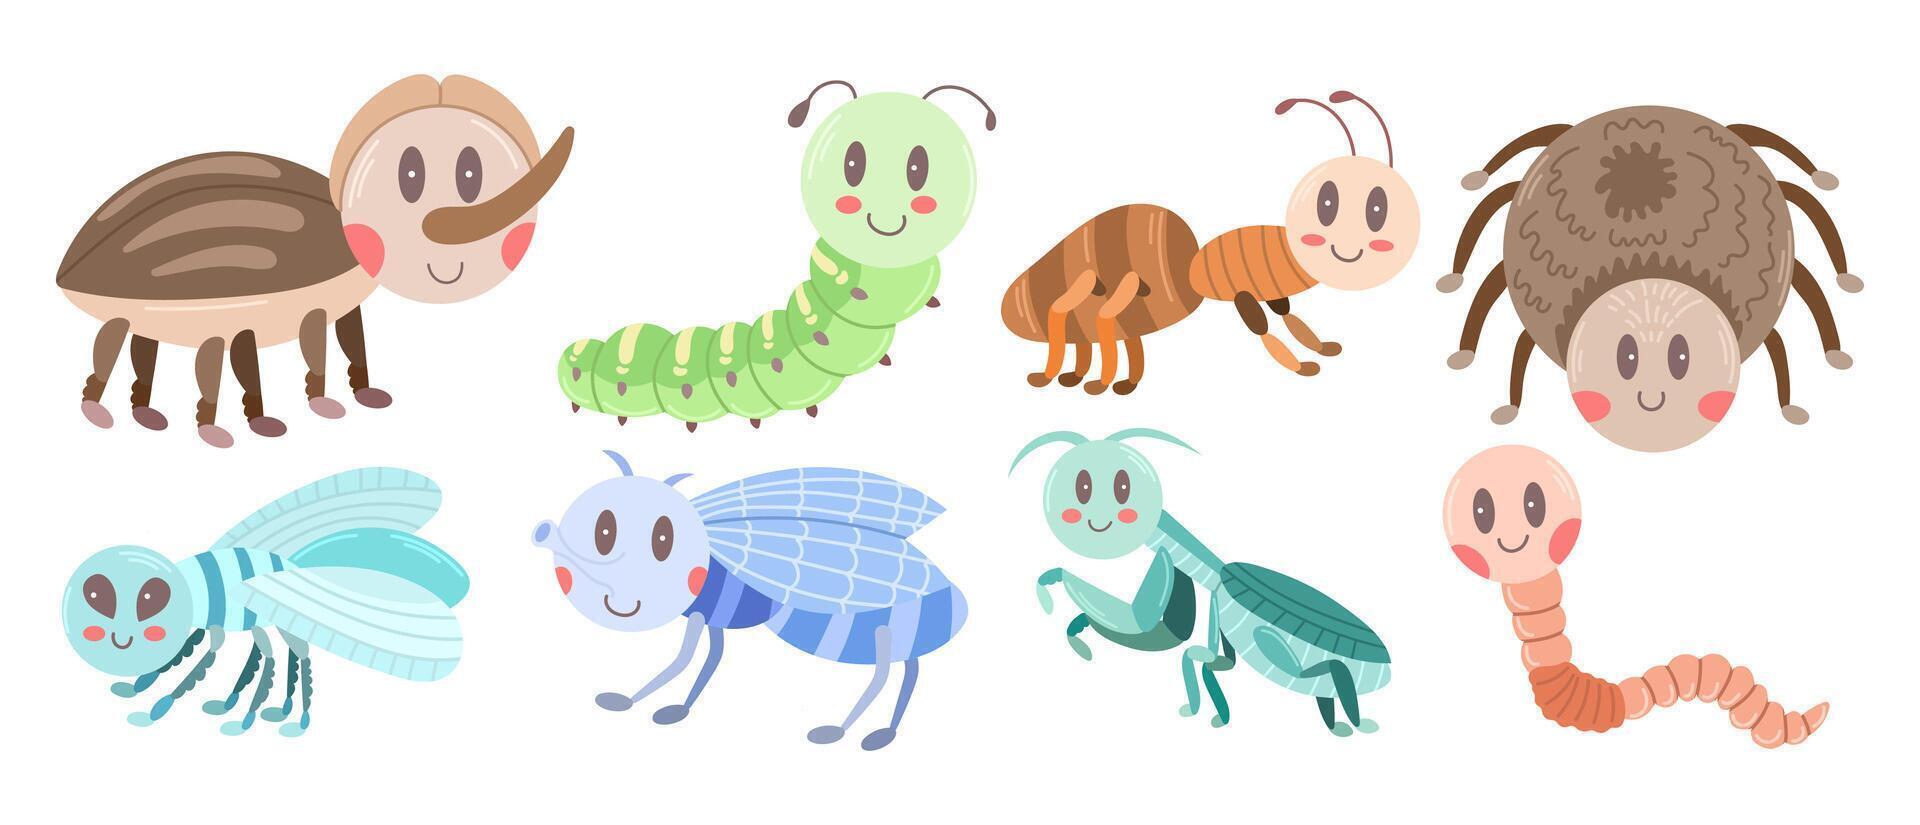 cartone animato impostato con diverso insetti - ragno, volare, zanzara, formica, mantide, verme, bruco. vettore illustrazione